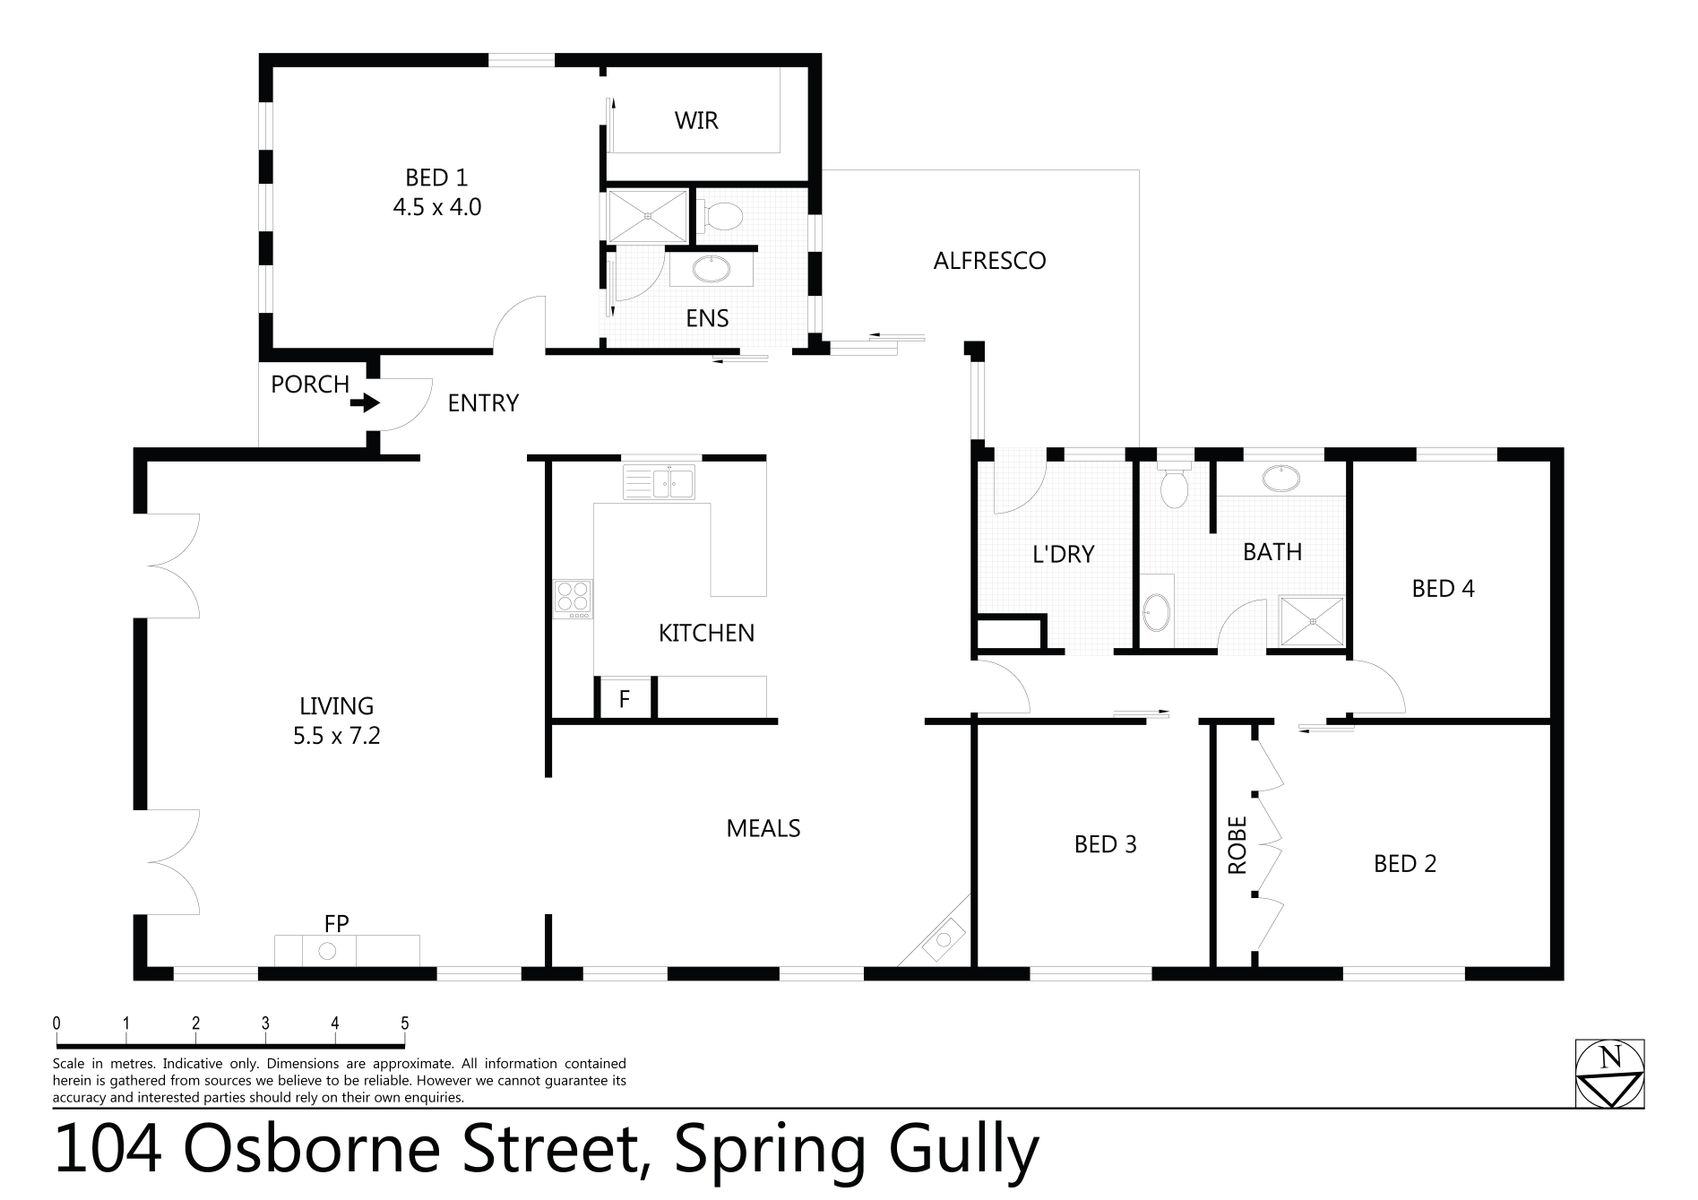 104 Osborne Street, Spring Gully (05 FEBRUARY 2018) 196sqm